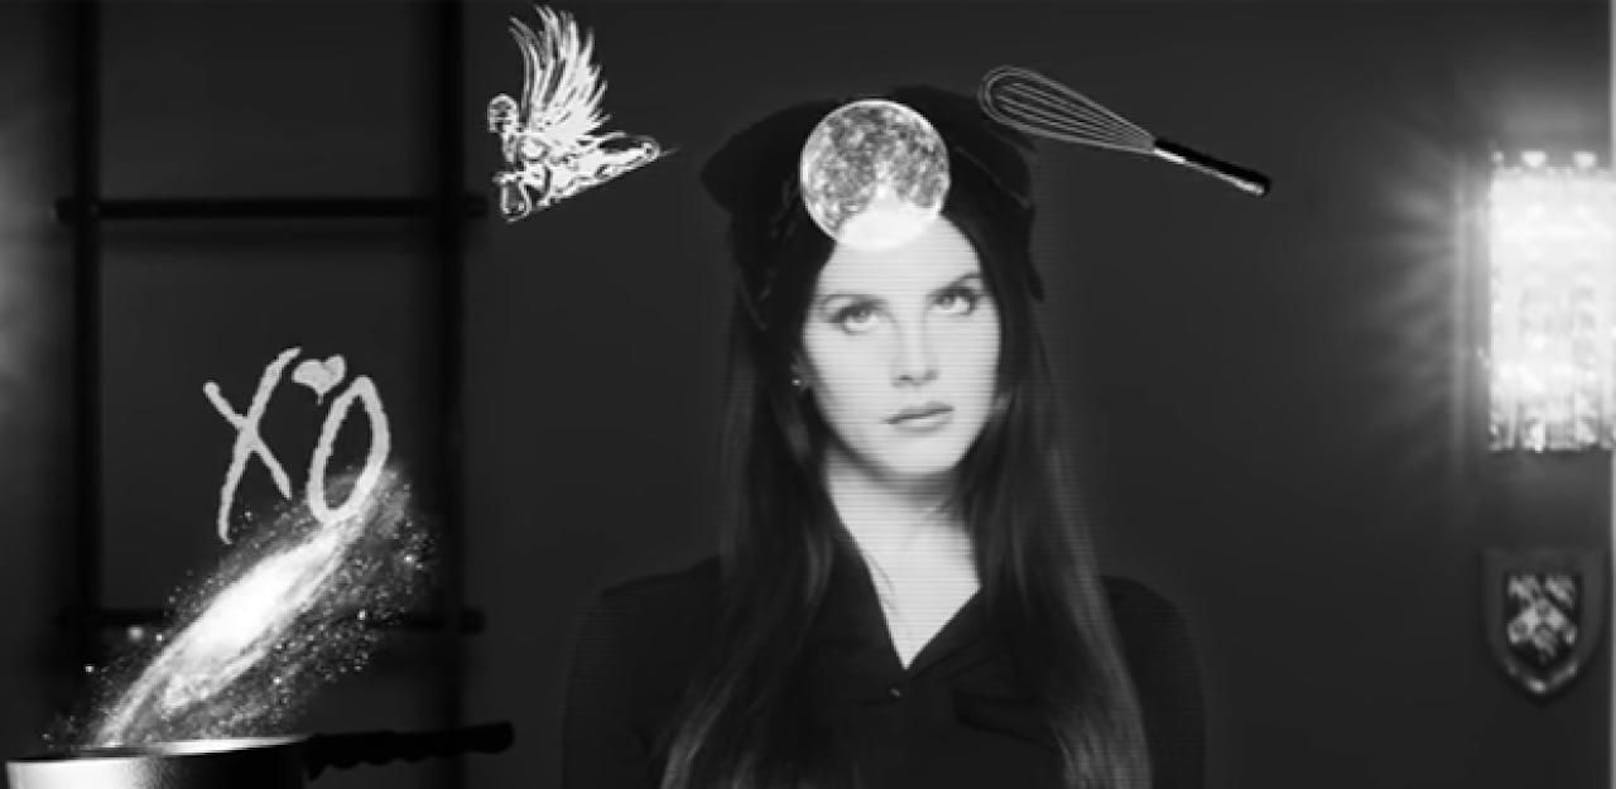 Lana Del Rey präsentiert ihr neues Album-Cover